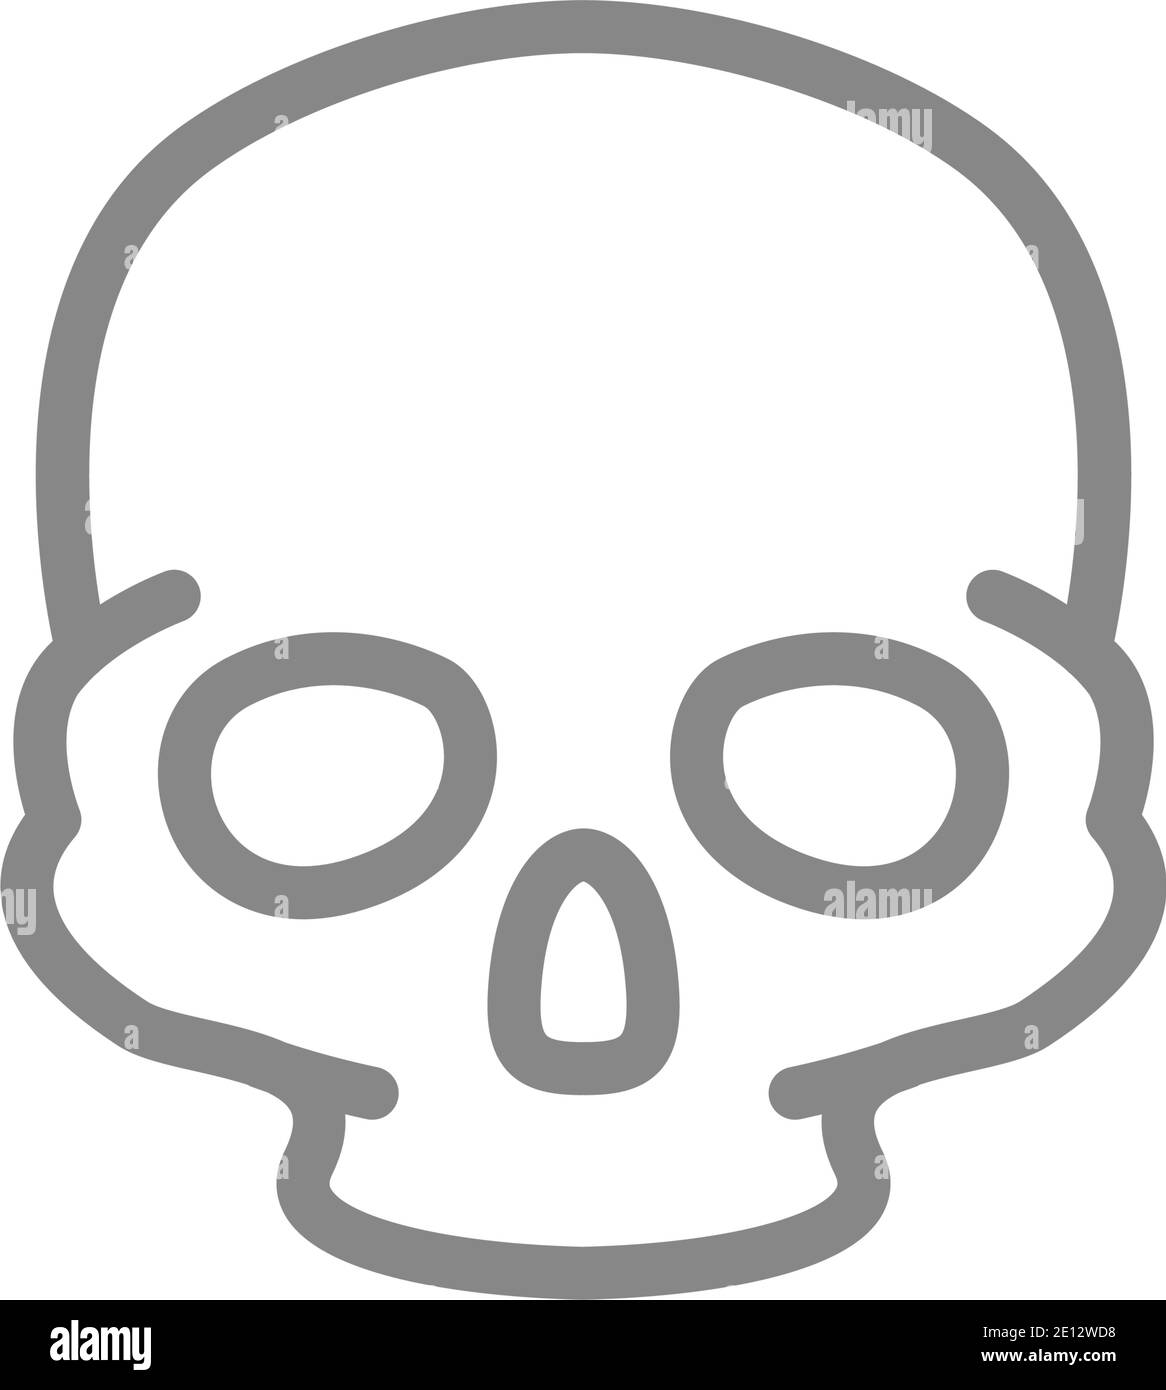 Icona della linea cranica umana. Simbolo della struttura ossea della testa Illustrazione Vettoriale